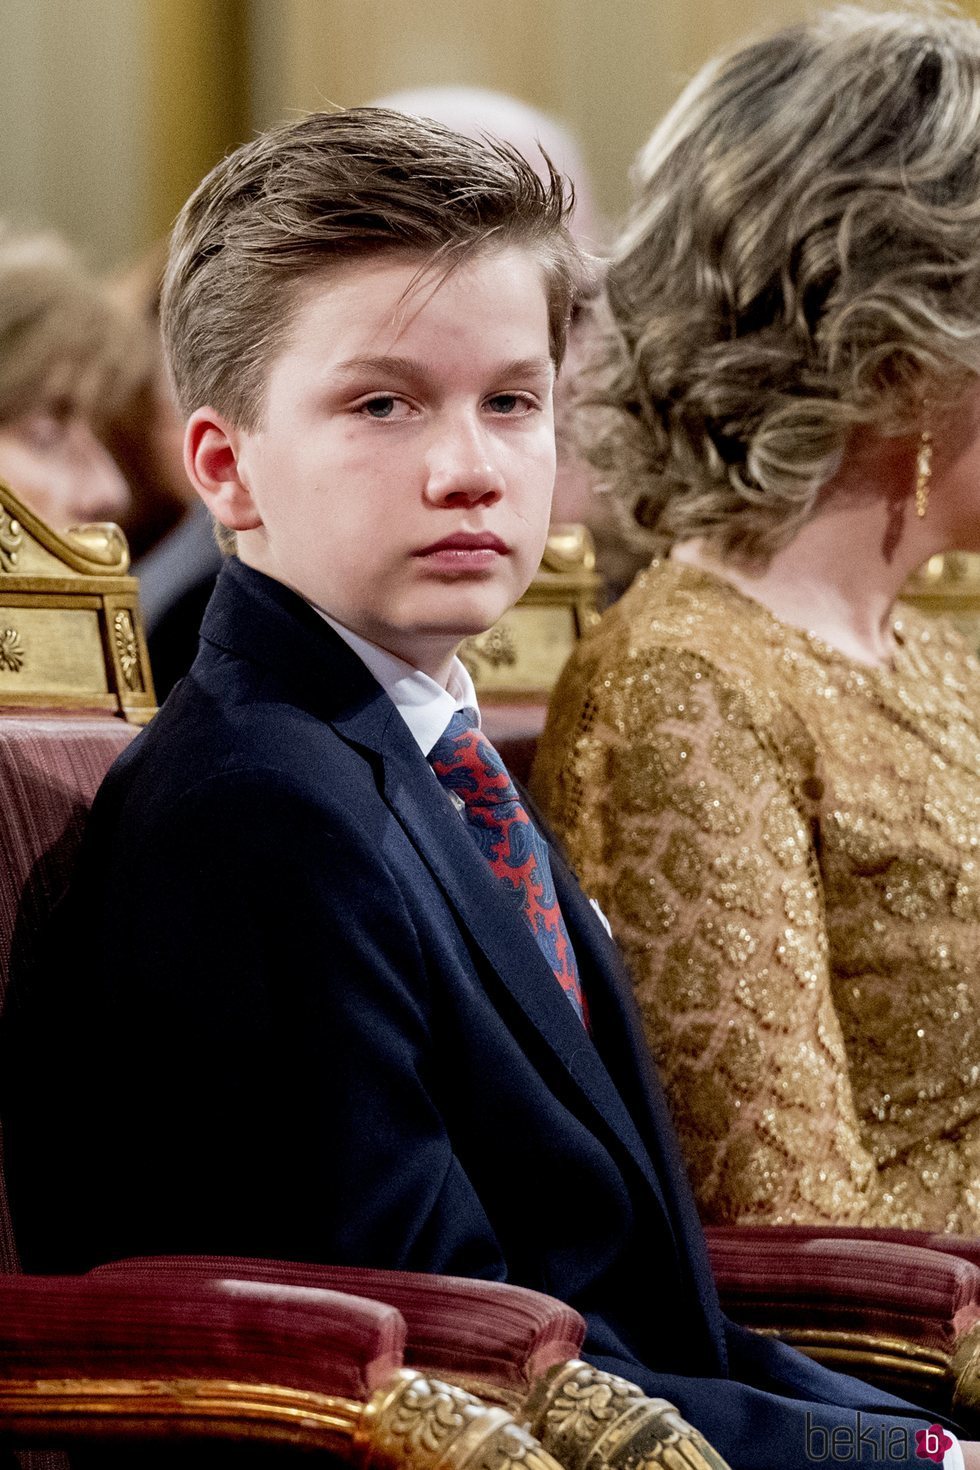 El Príncipe Gabriel de Bélgica en el Concierto de Navidad 2018